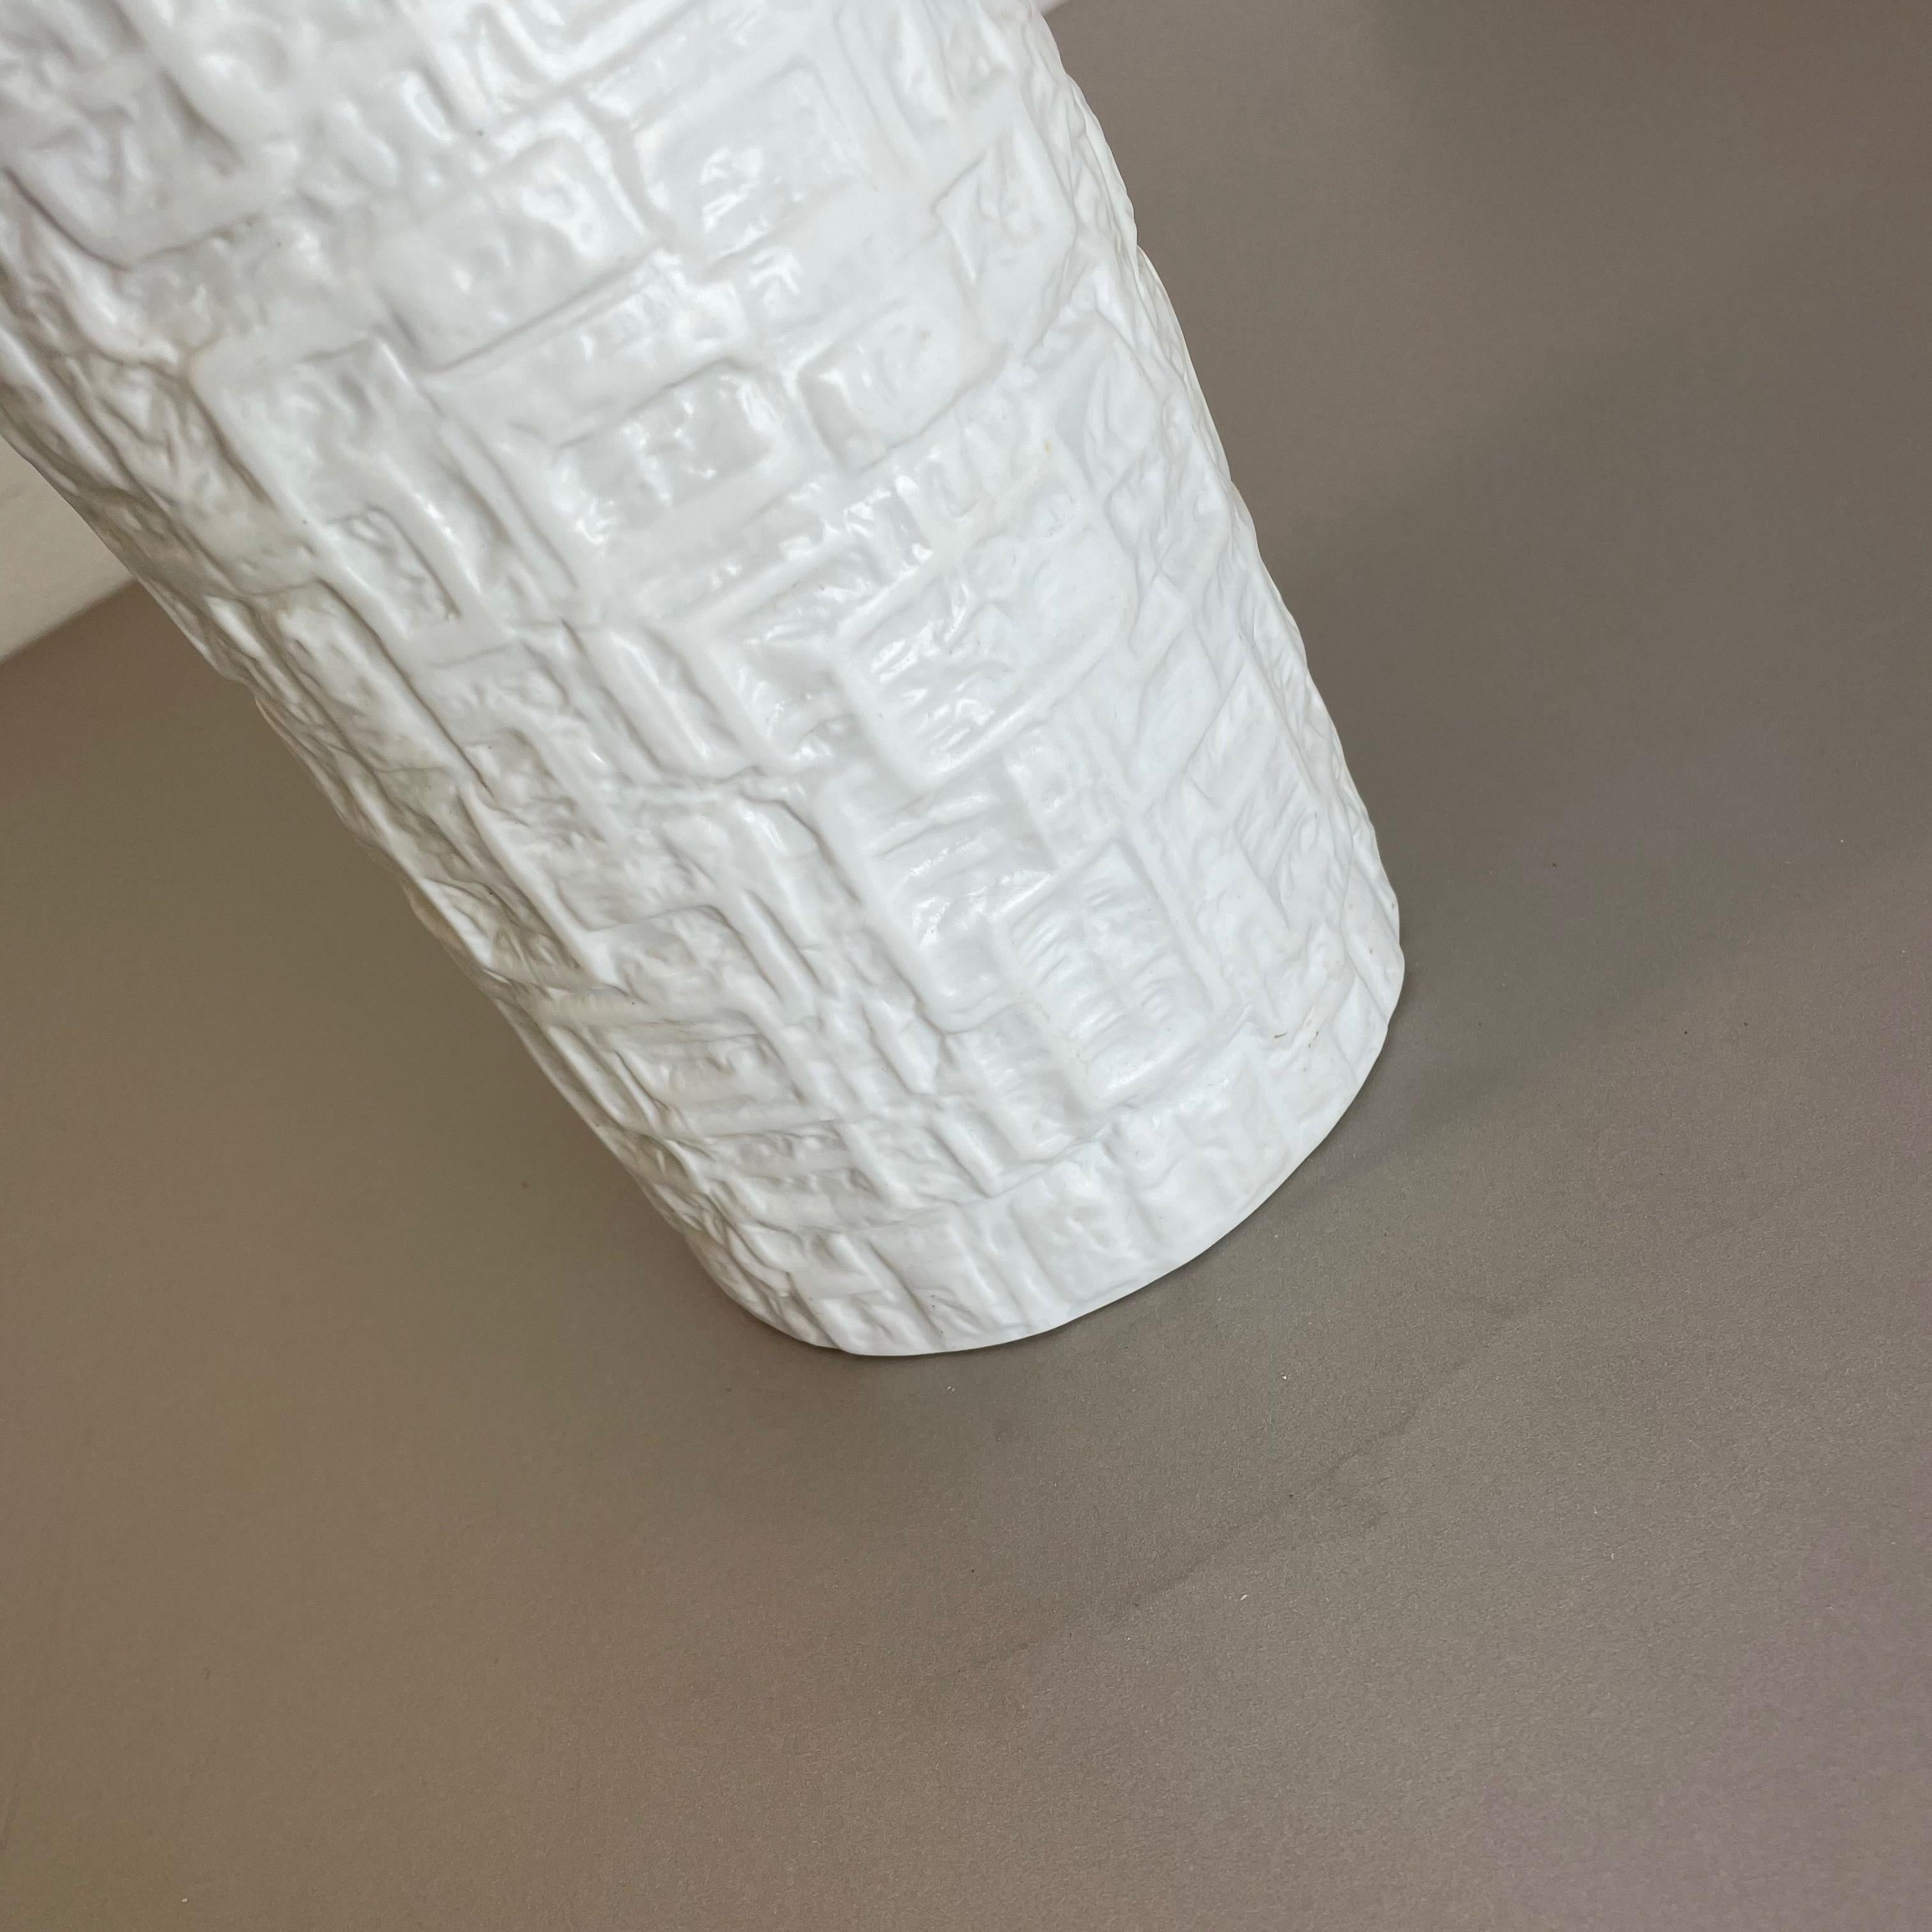 Large OP Art Vase Porcelain Vase by Martin Freyer for Rosenthal, Germany For Sale 2